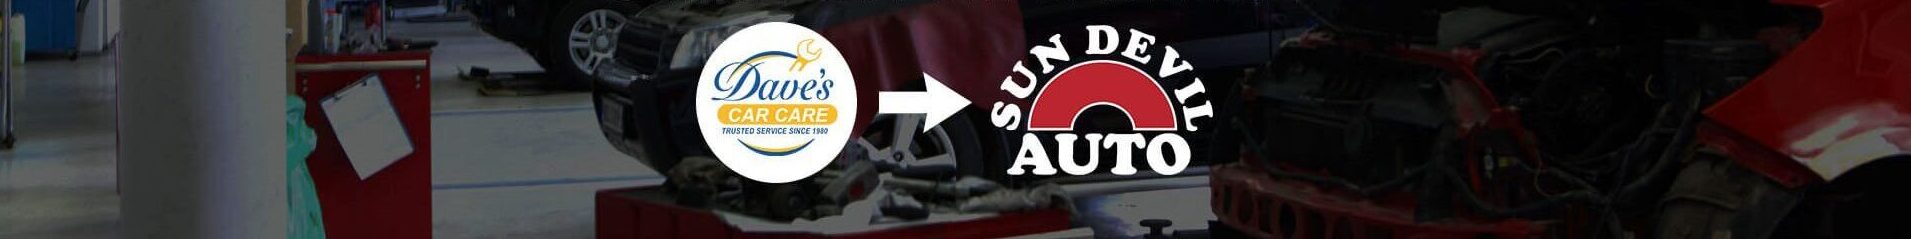 Glendale Auto Repair | Sun Devil Auto Shop #1233 | Oil and Brakes